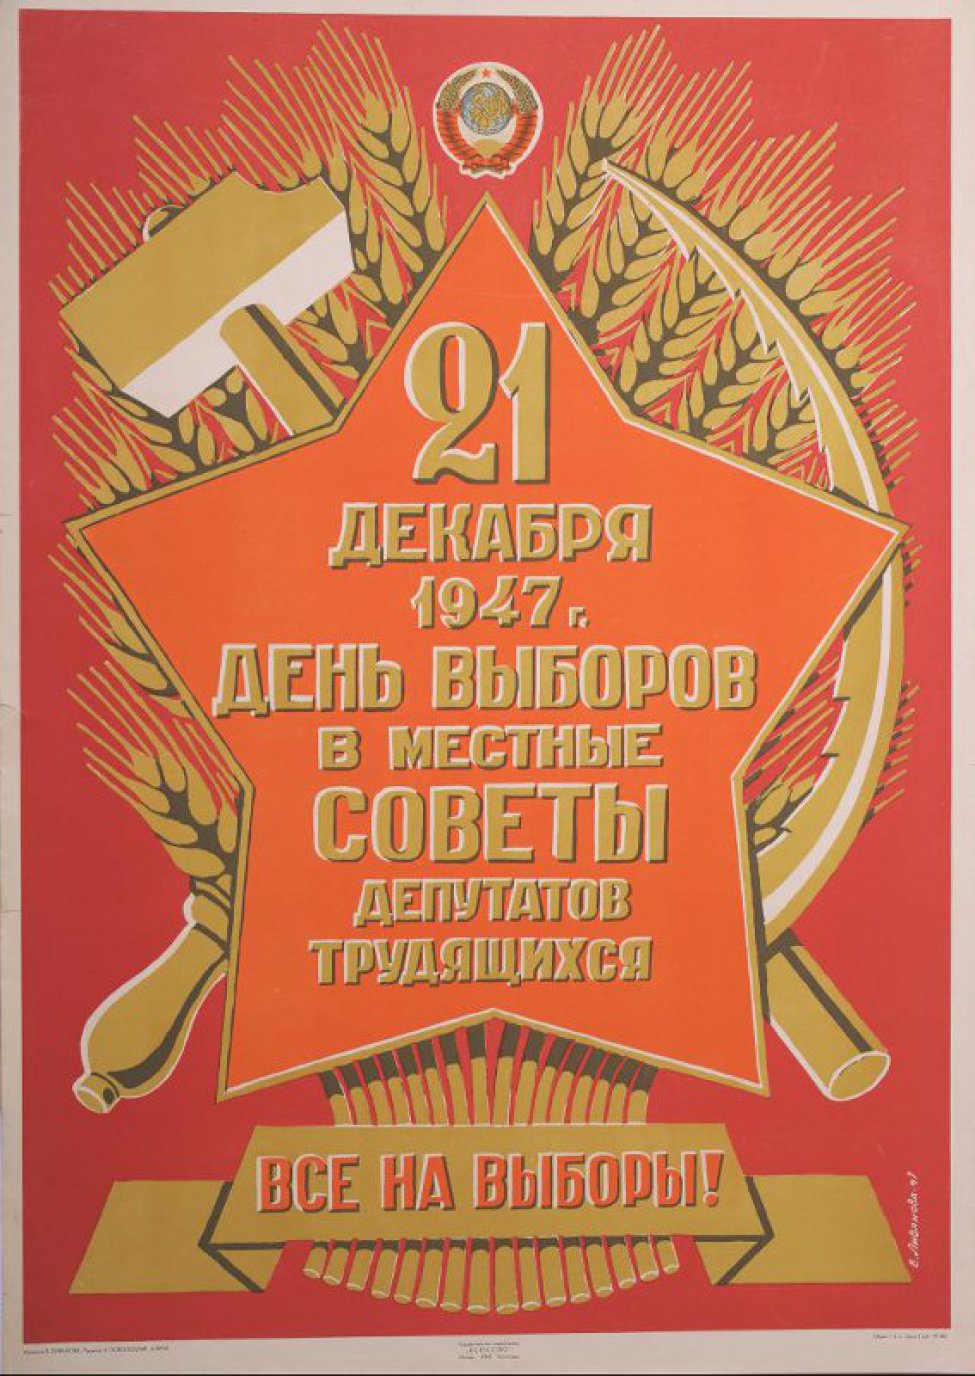 На фоне колосьев пшеницы, серпа и молота изображена красная звезда, вверху - герб СССР. На звезде надпись "21 декабря 1947 г. день выборов в местные советы депутатов трудящихся". Под звездой лозунг.